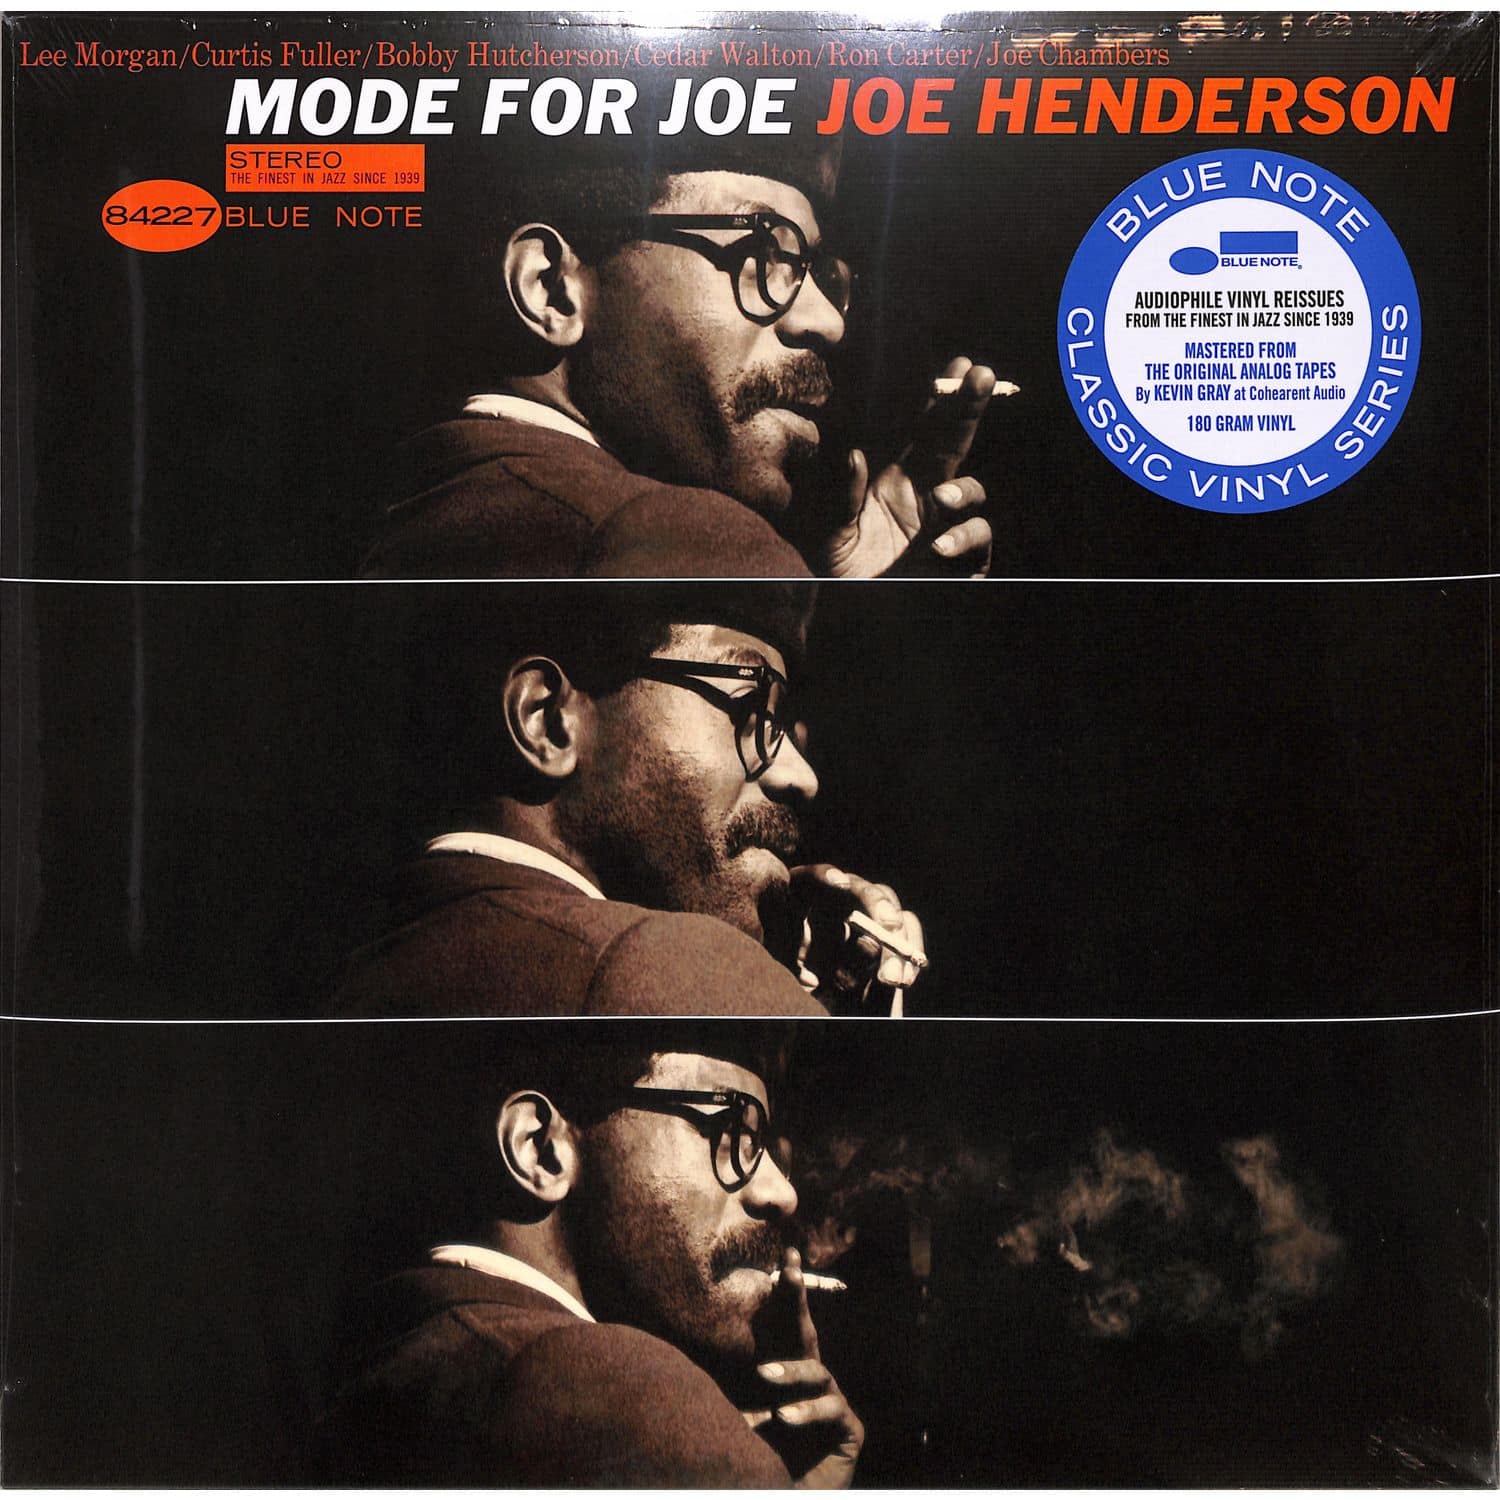 Joe Henderson - MODE FOR JOE 